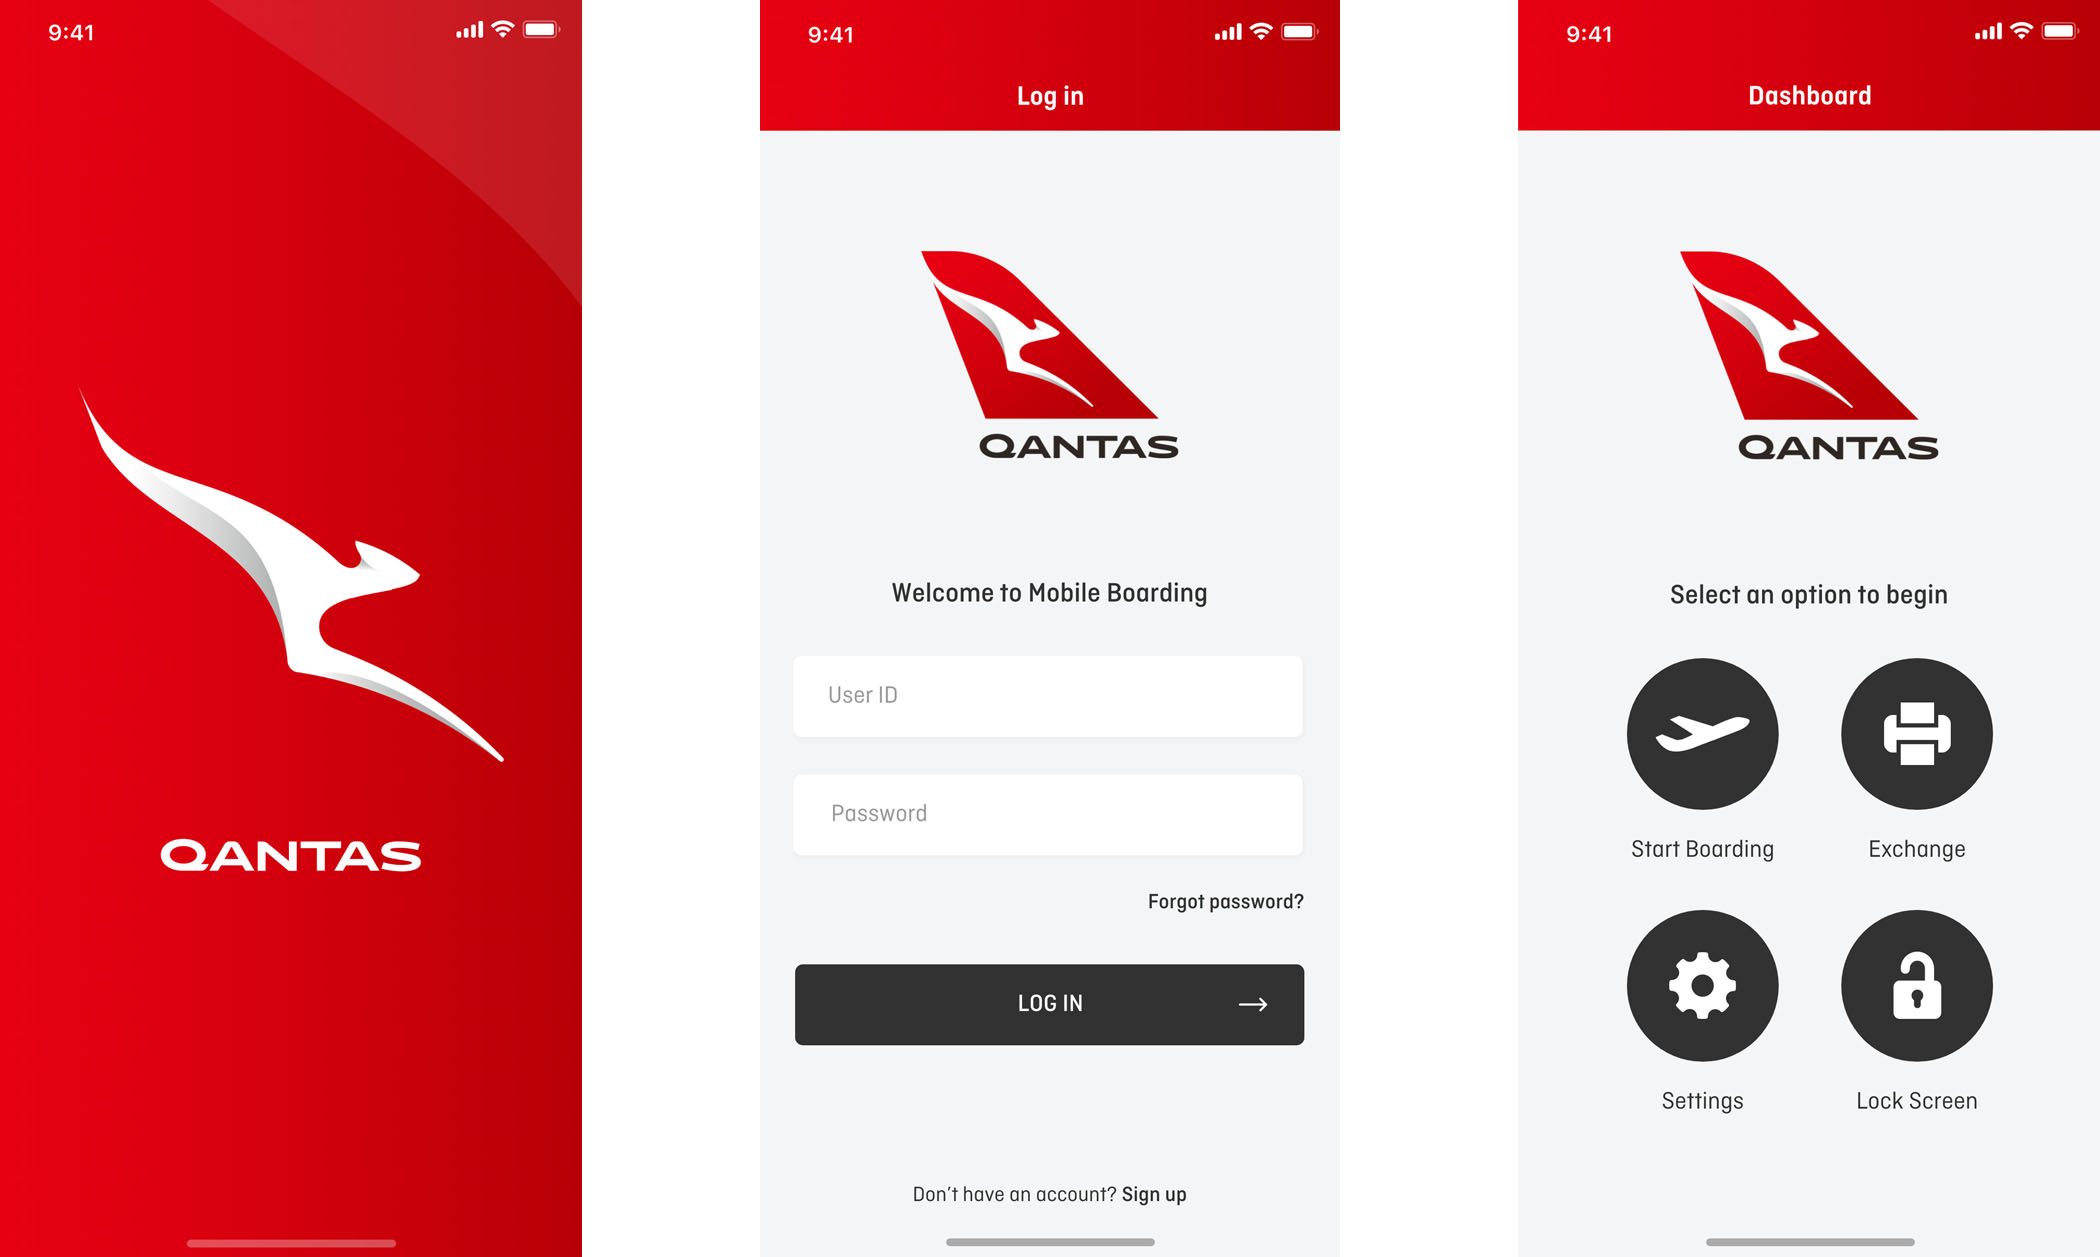 Qantas: Mobile Boarding Application - Screen 1